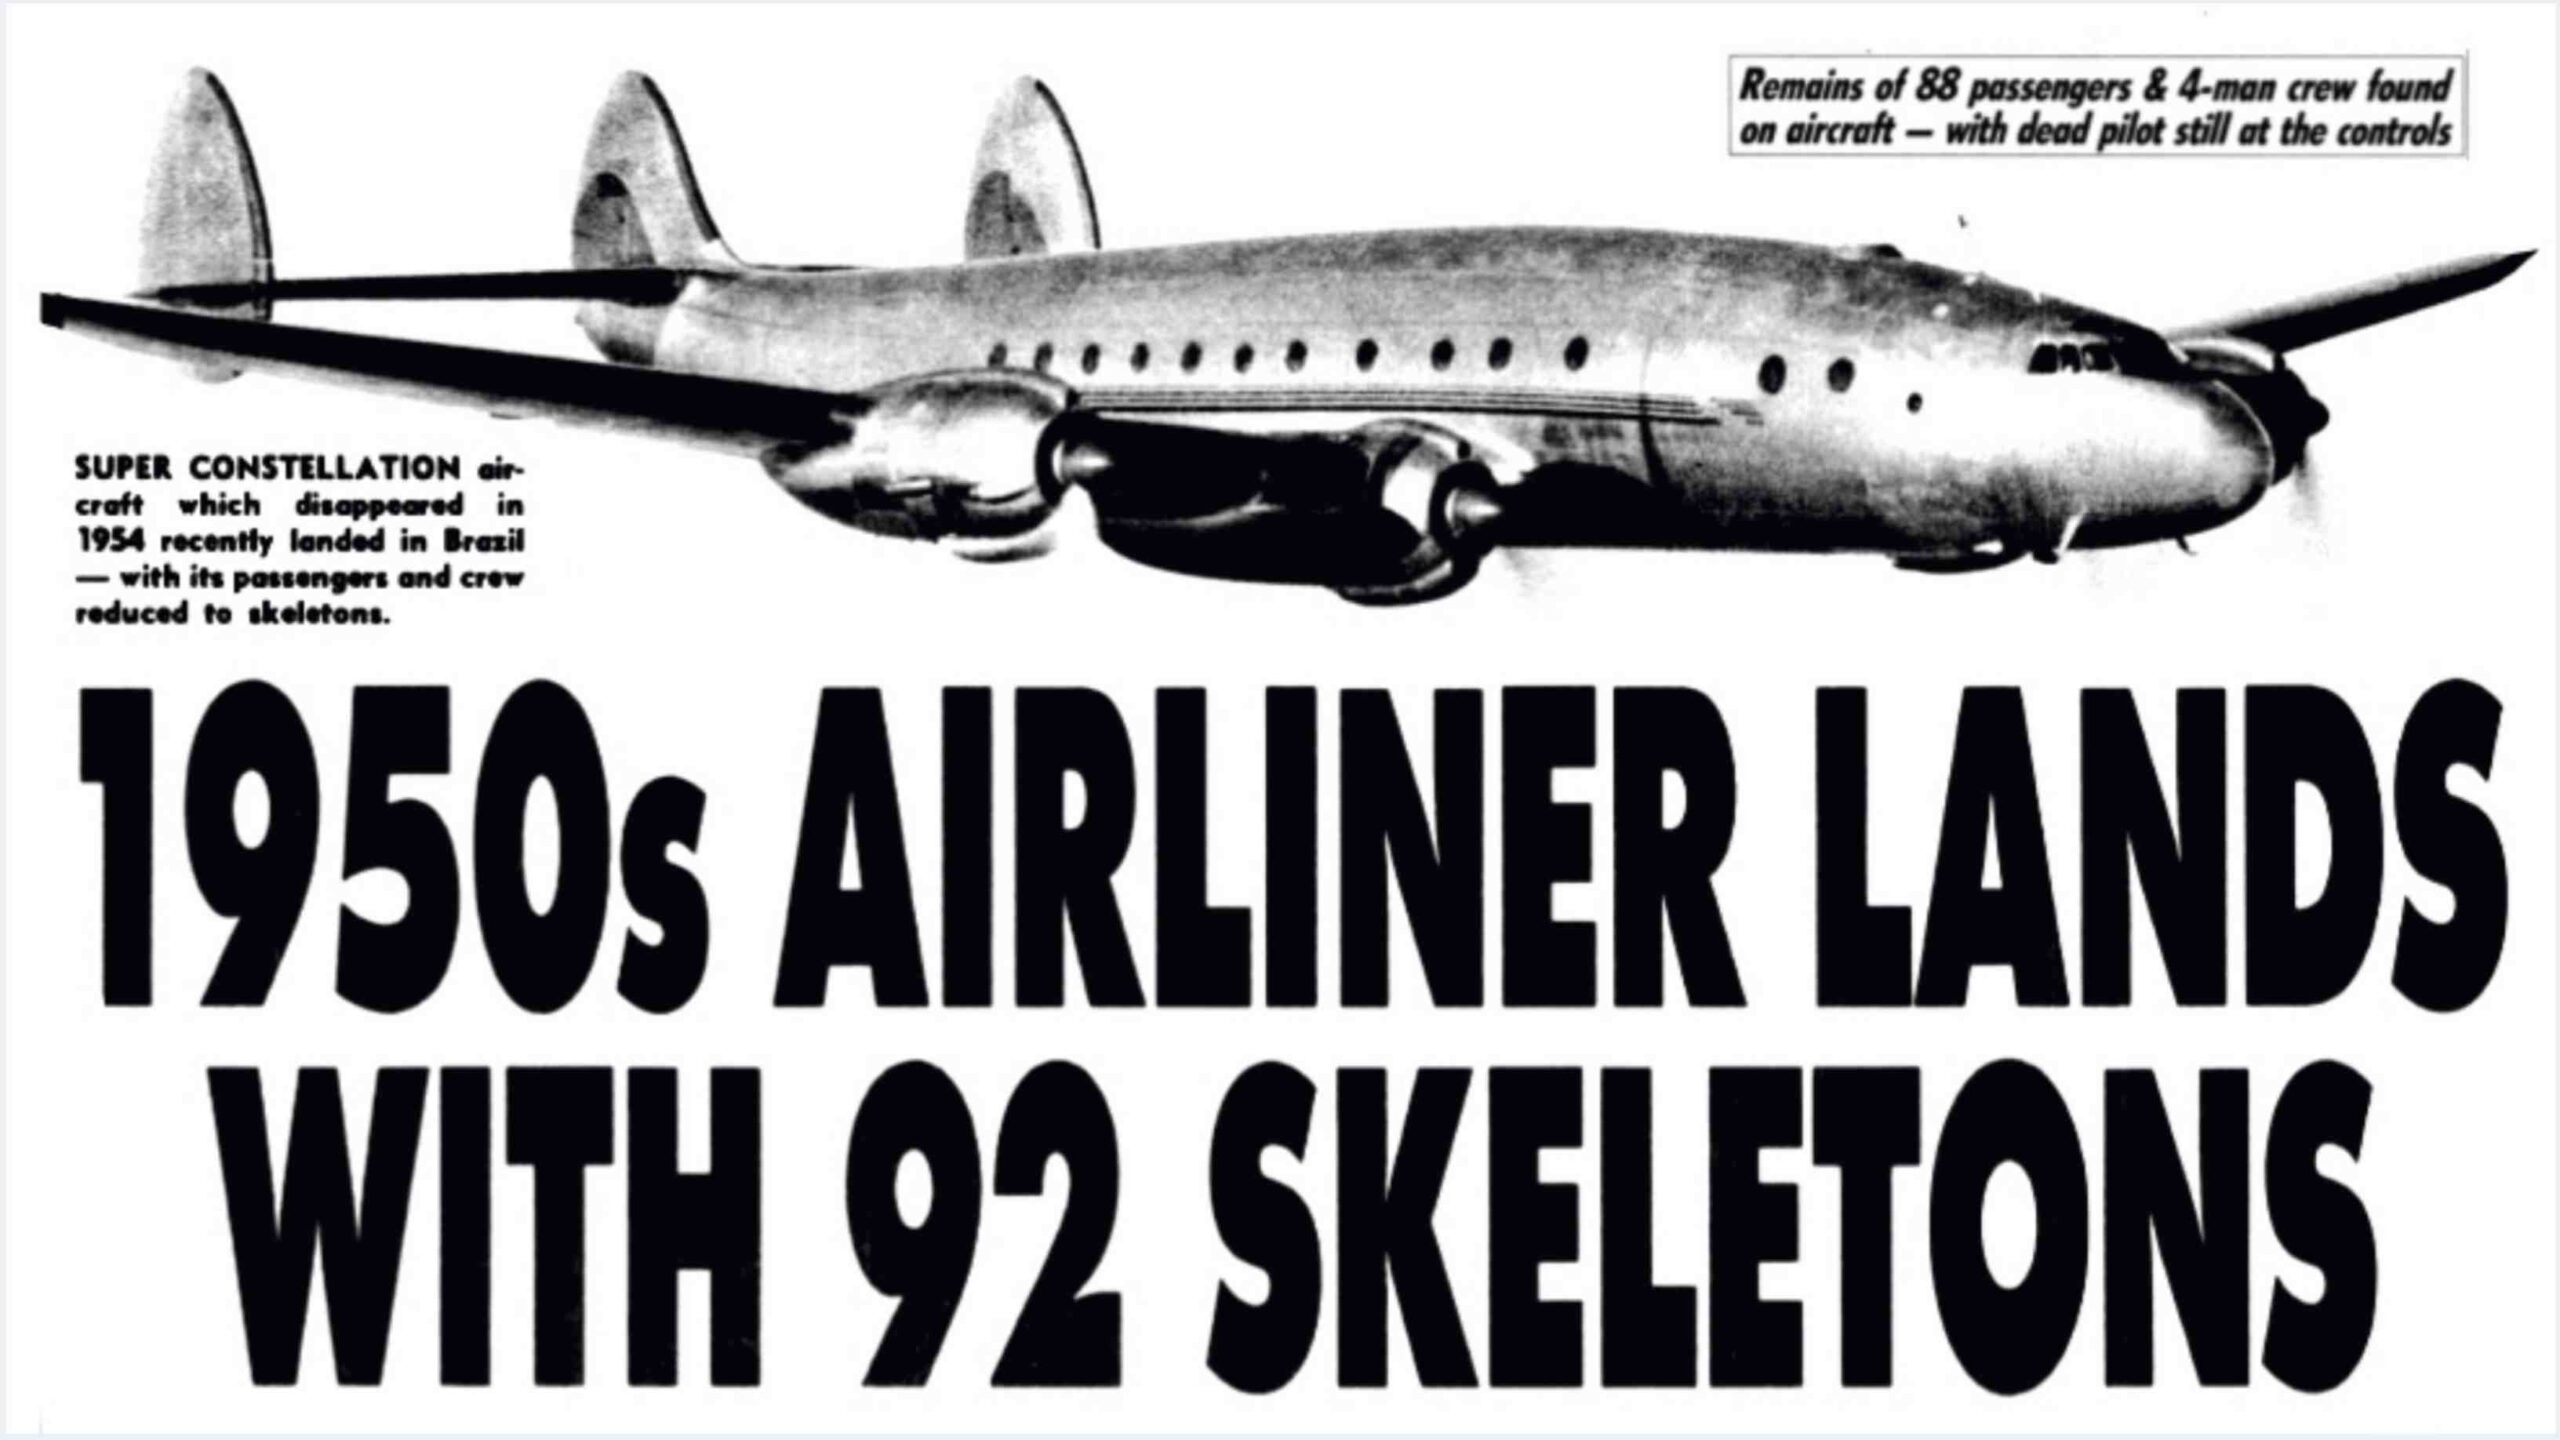 Сантьяго, рейс 513: літак, втрачений на 35 років, приземлився з 92 скелетами на борту! 1